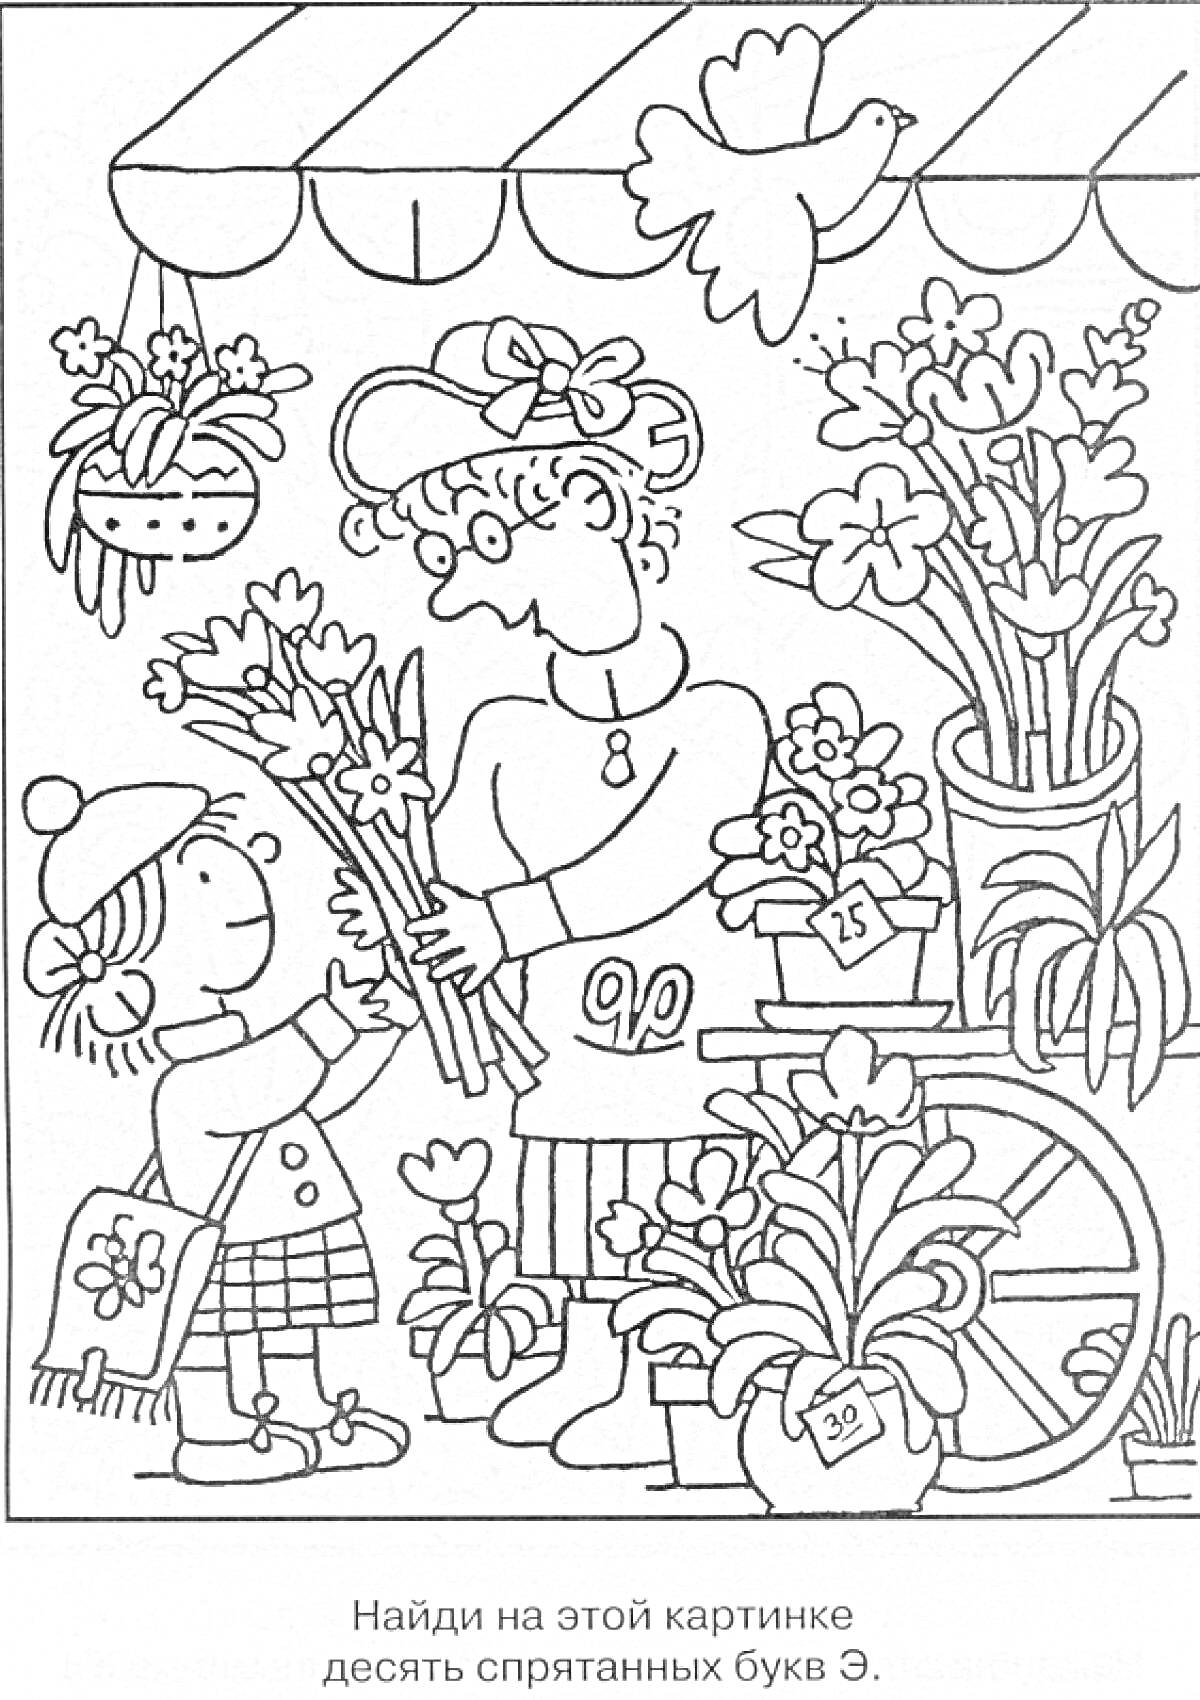 Раскраска Рынок цветов: продавец, покупатель, прилавок с цветами, птичка, буквы 